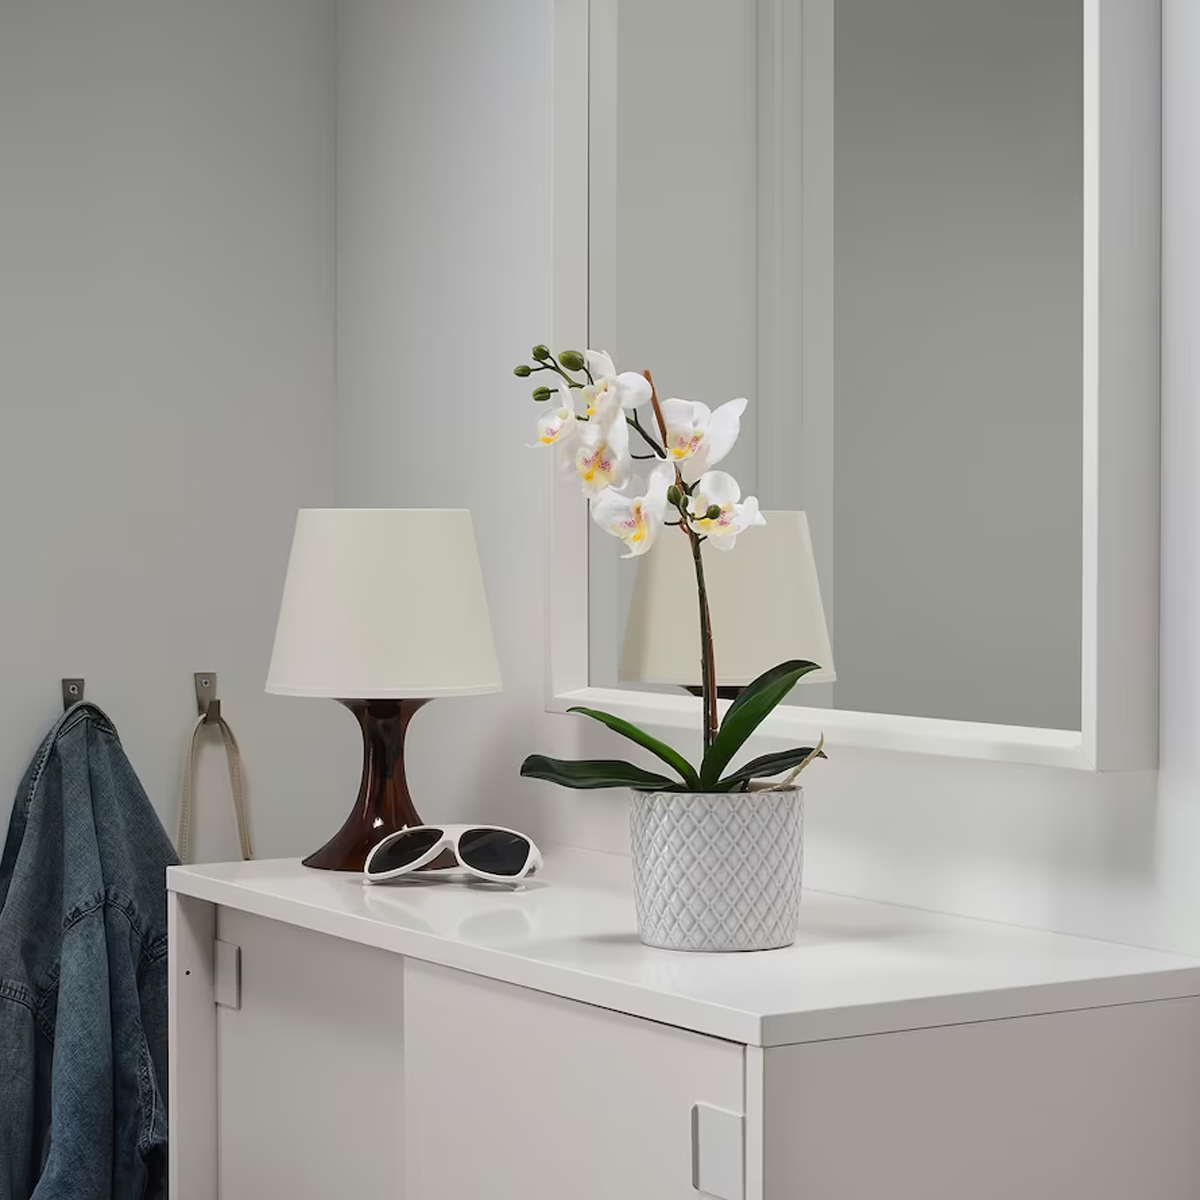 FEJKA 9cm vjestacka biljka u saksiji, orhideja bijela